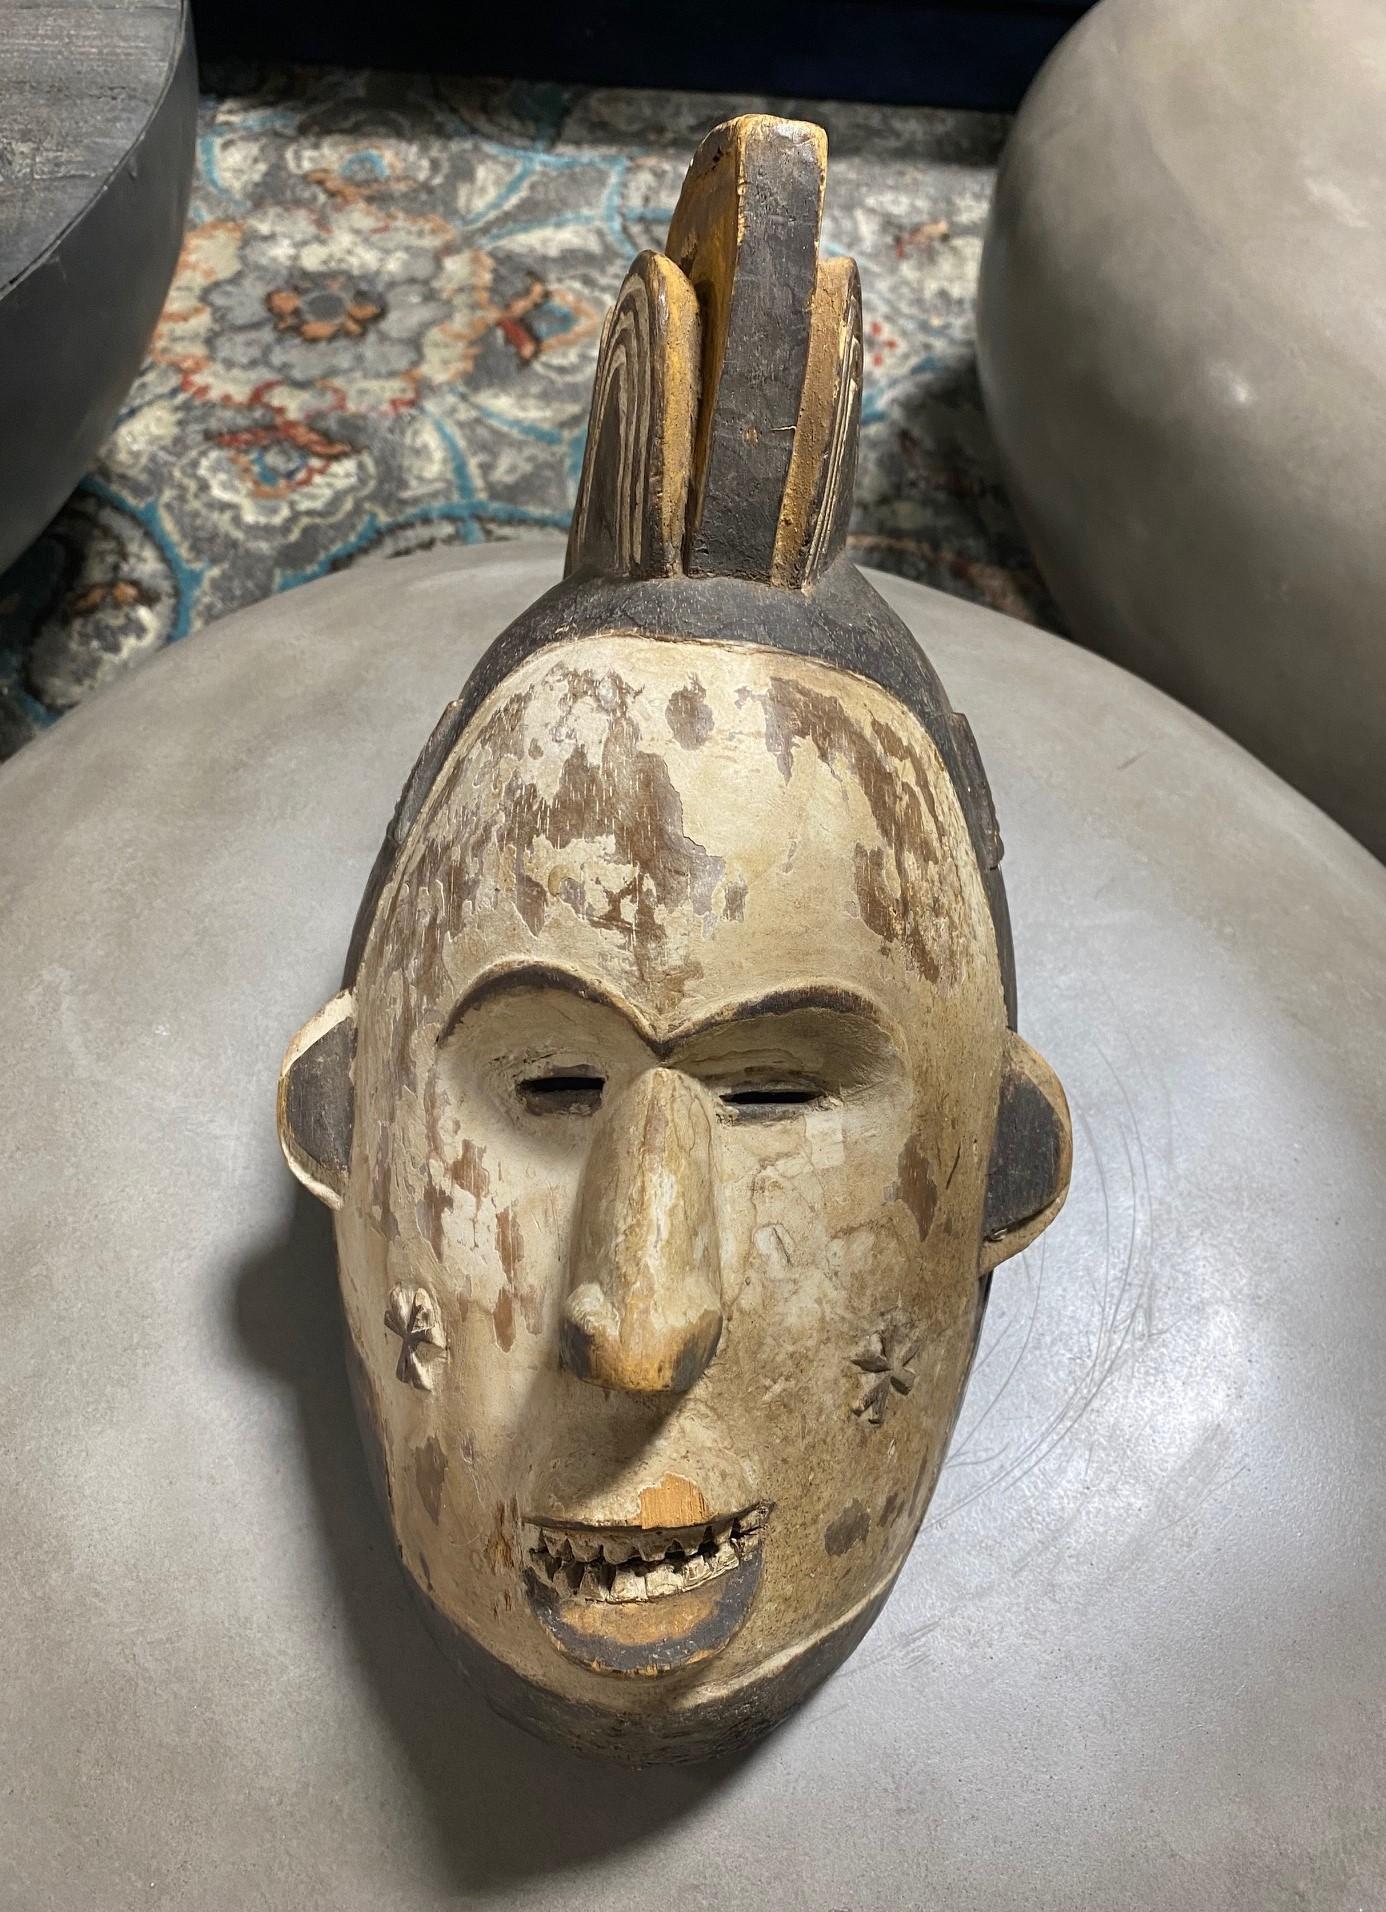 Eine fein geschnitzte Maske aus den frühen bis mittleren 1900er Jahren vom Volk der Igo im Südosten Nigerias. 

Agbogho oder 